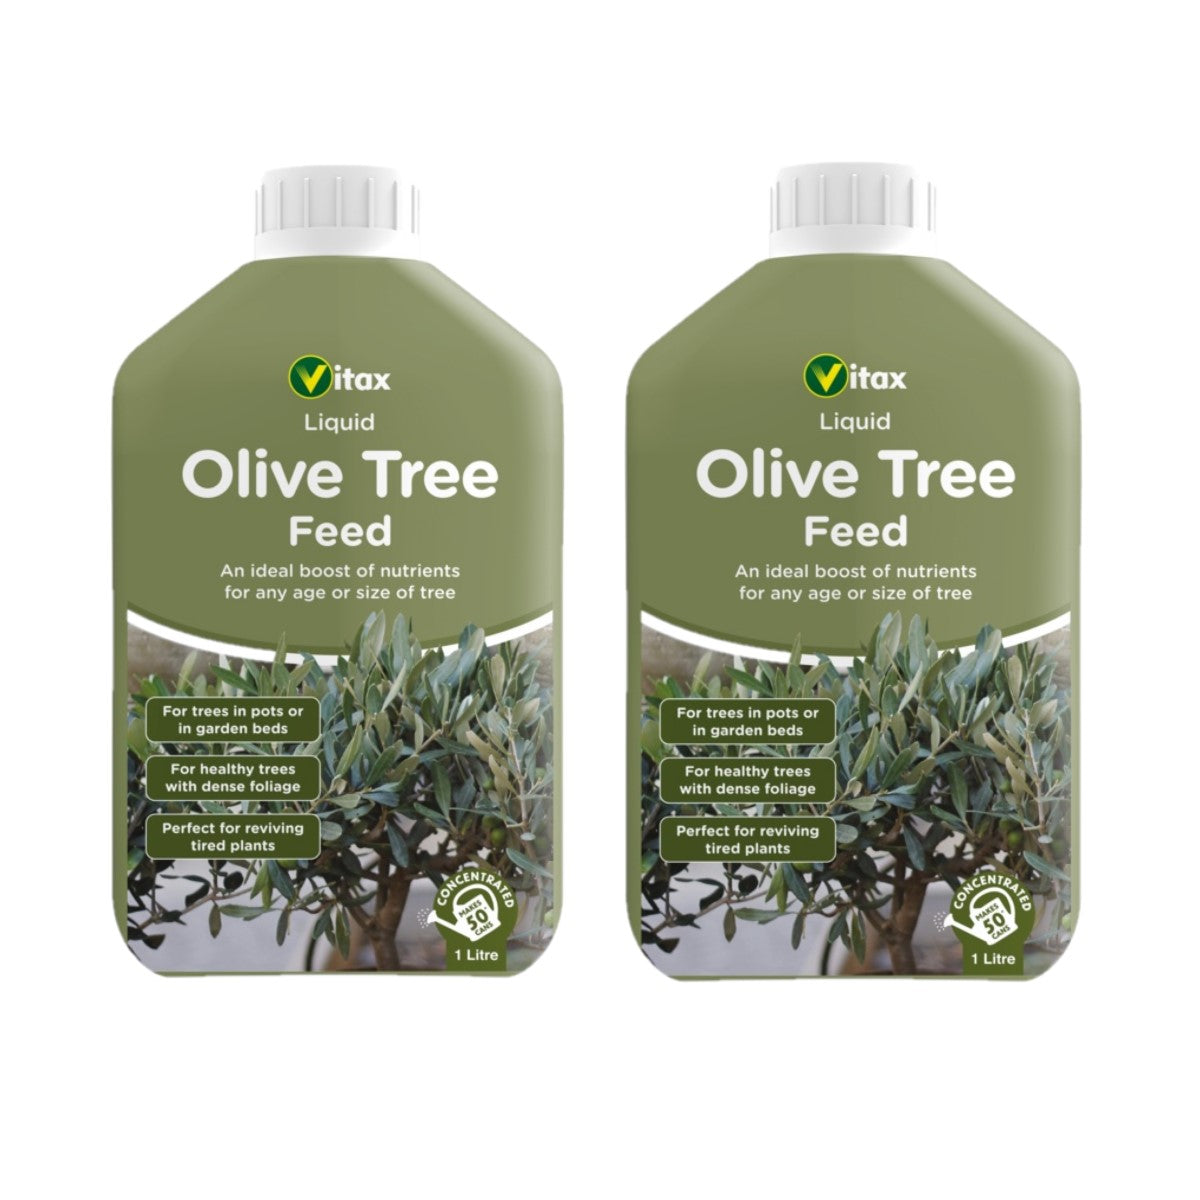 2 x Vitax Olive Tree Liquid Feed 1L